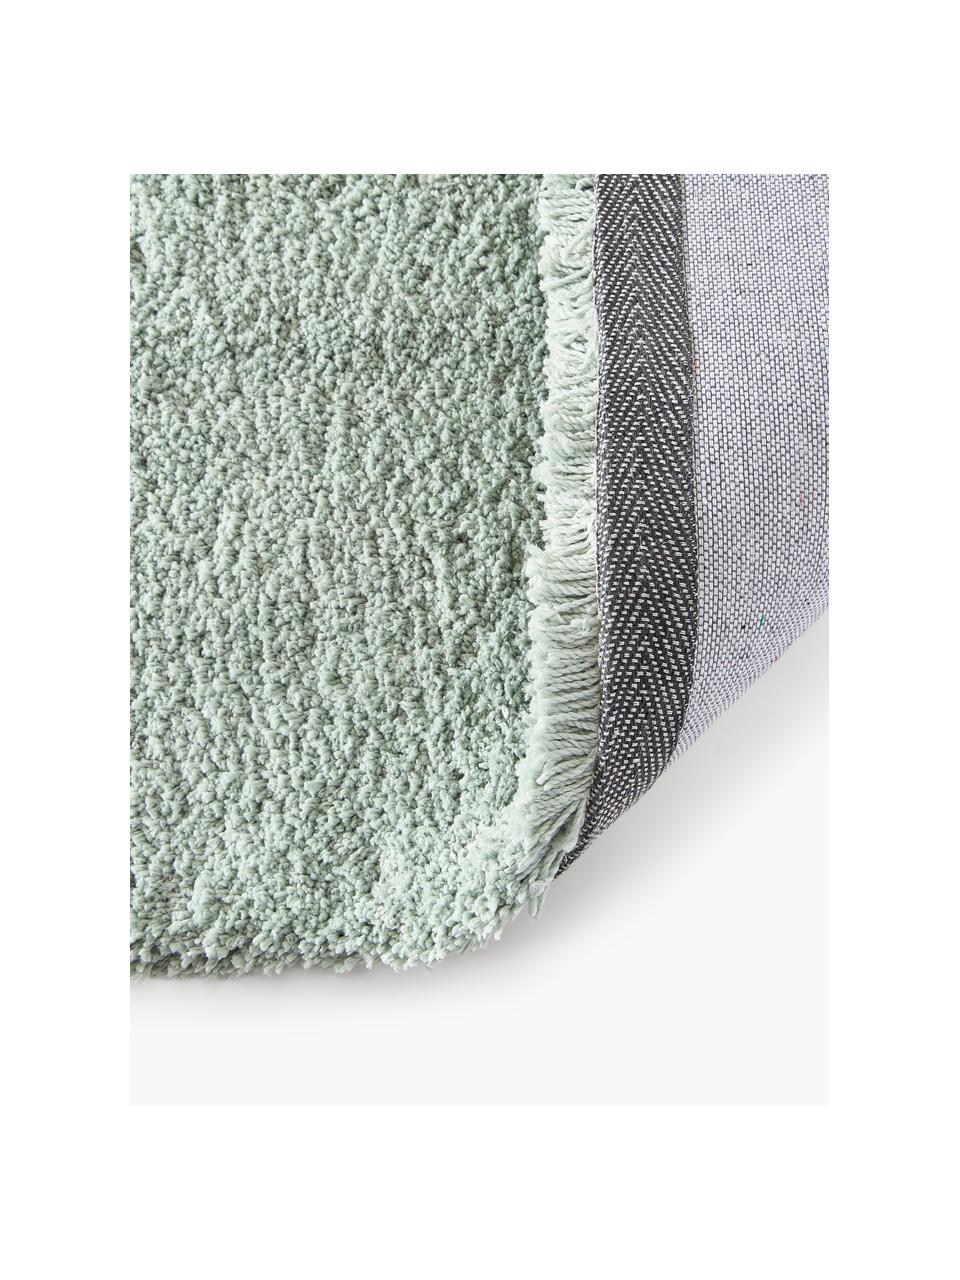 Puszysty dywan z długim włosiem Leighton, Szałwiowy zielony, S 80 x D 150 cm (Rozmiar XS)